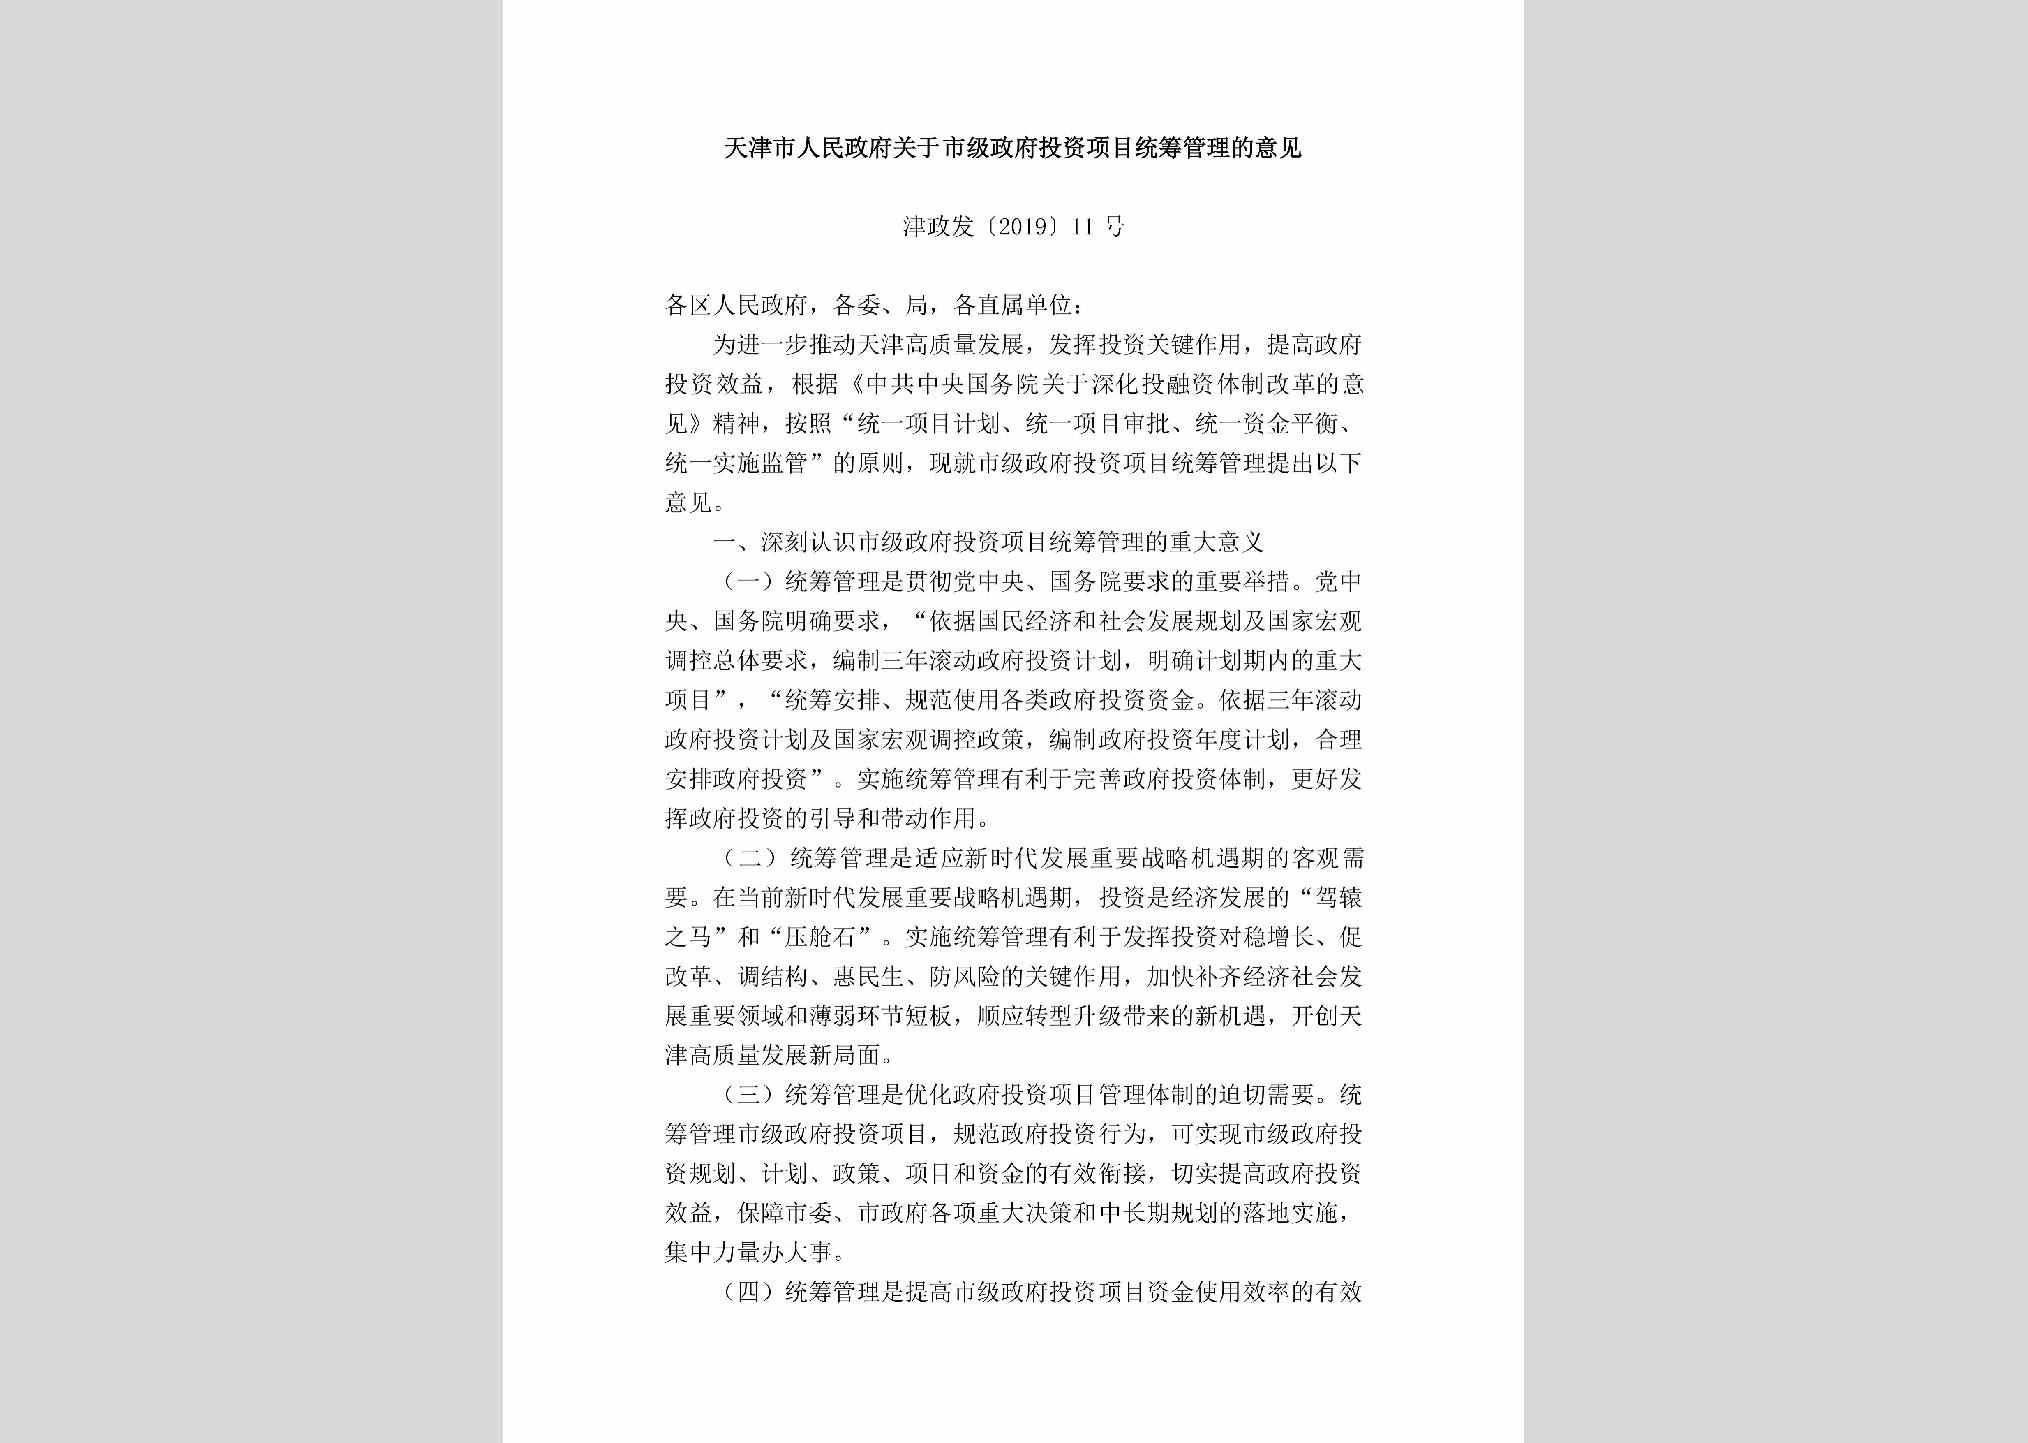 津政发[2019]11号：天津市人民政府关于市级政府投资项目统筹管理的意见